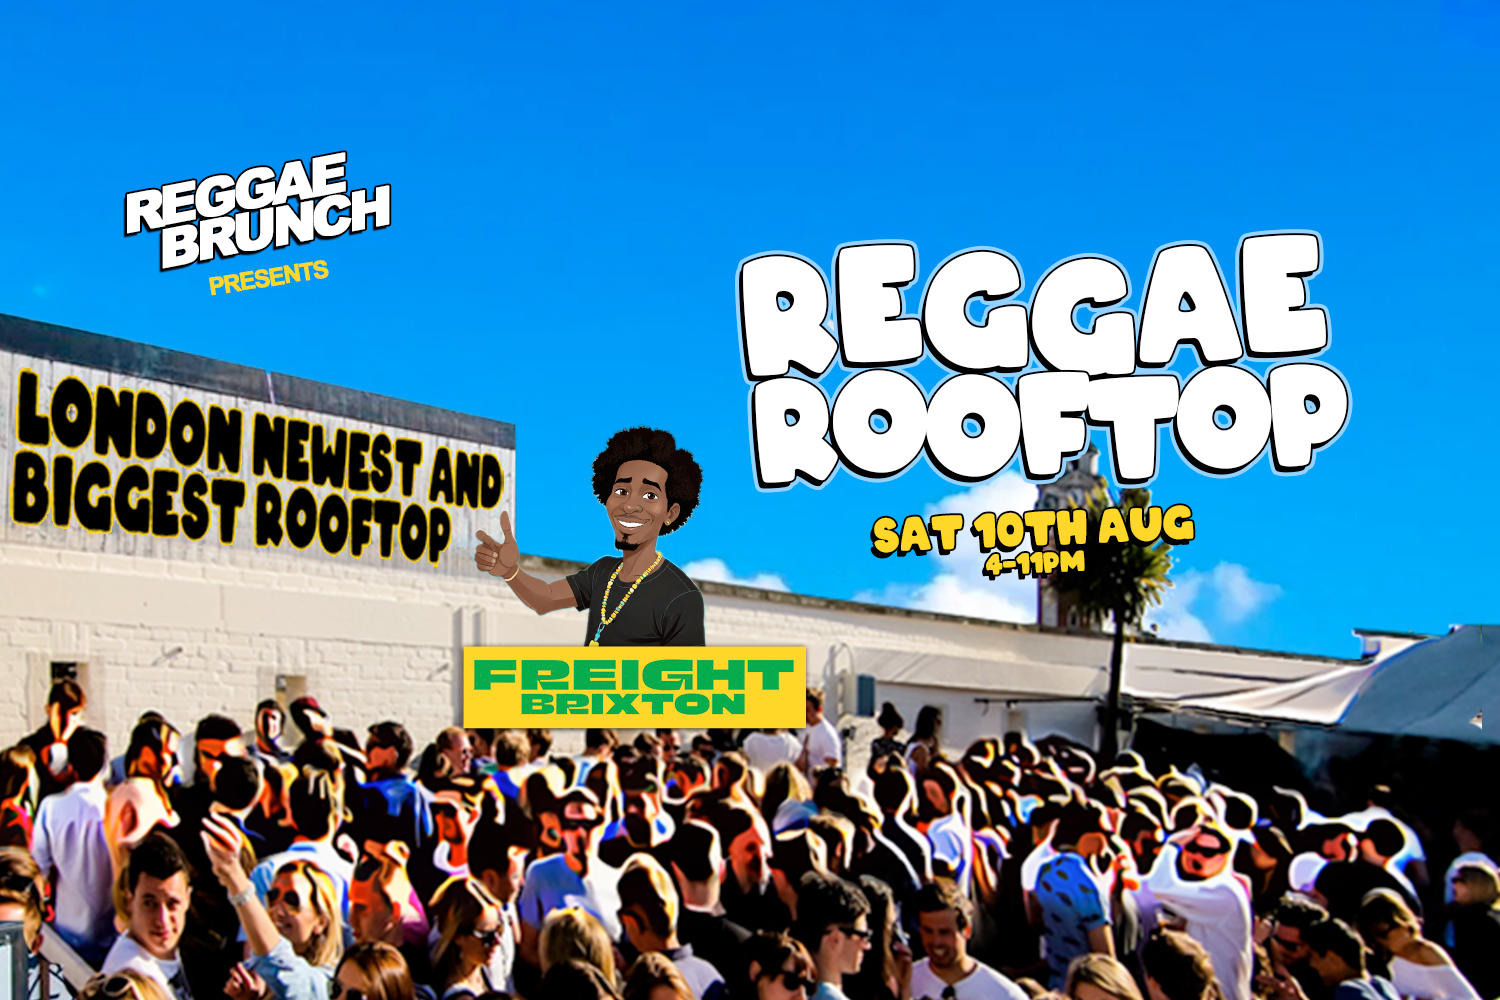 Sun, 10th Aug | Reggae Rooftop LDN